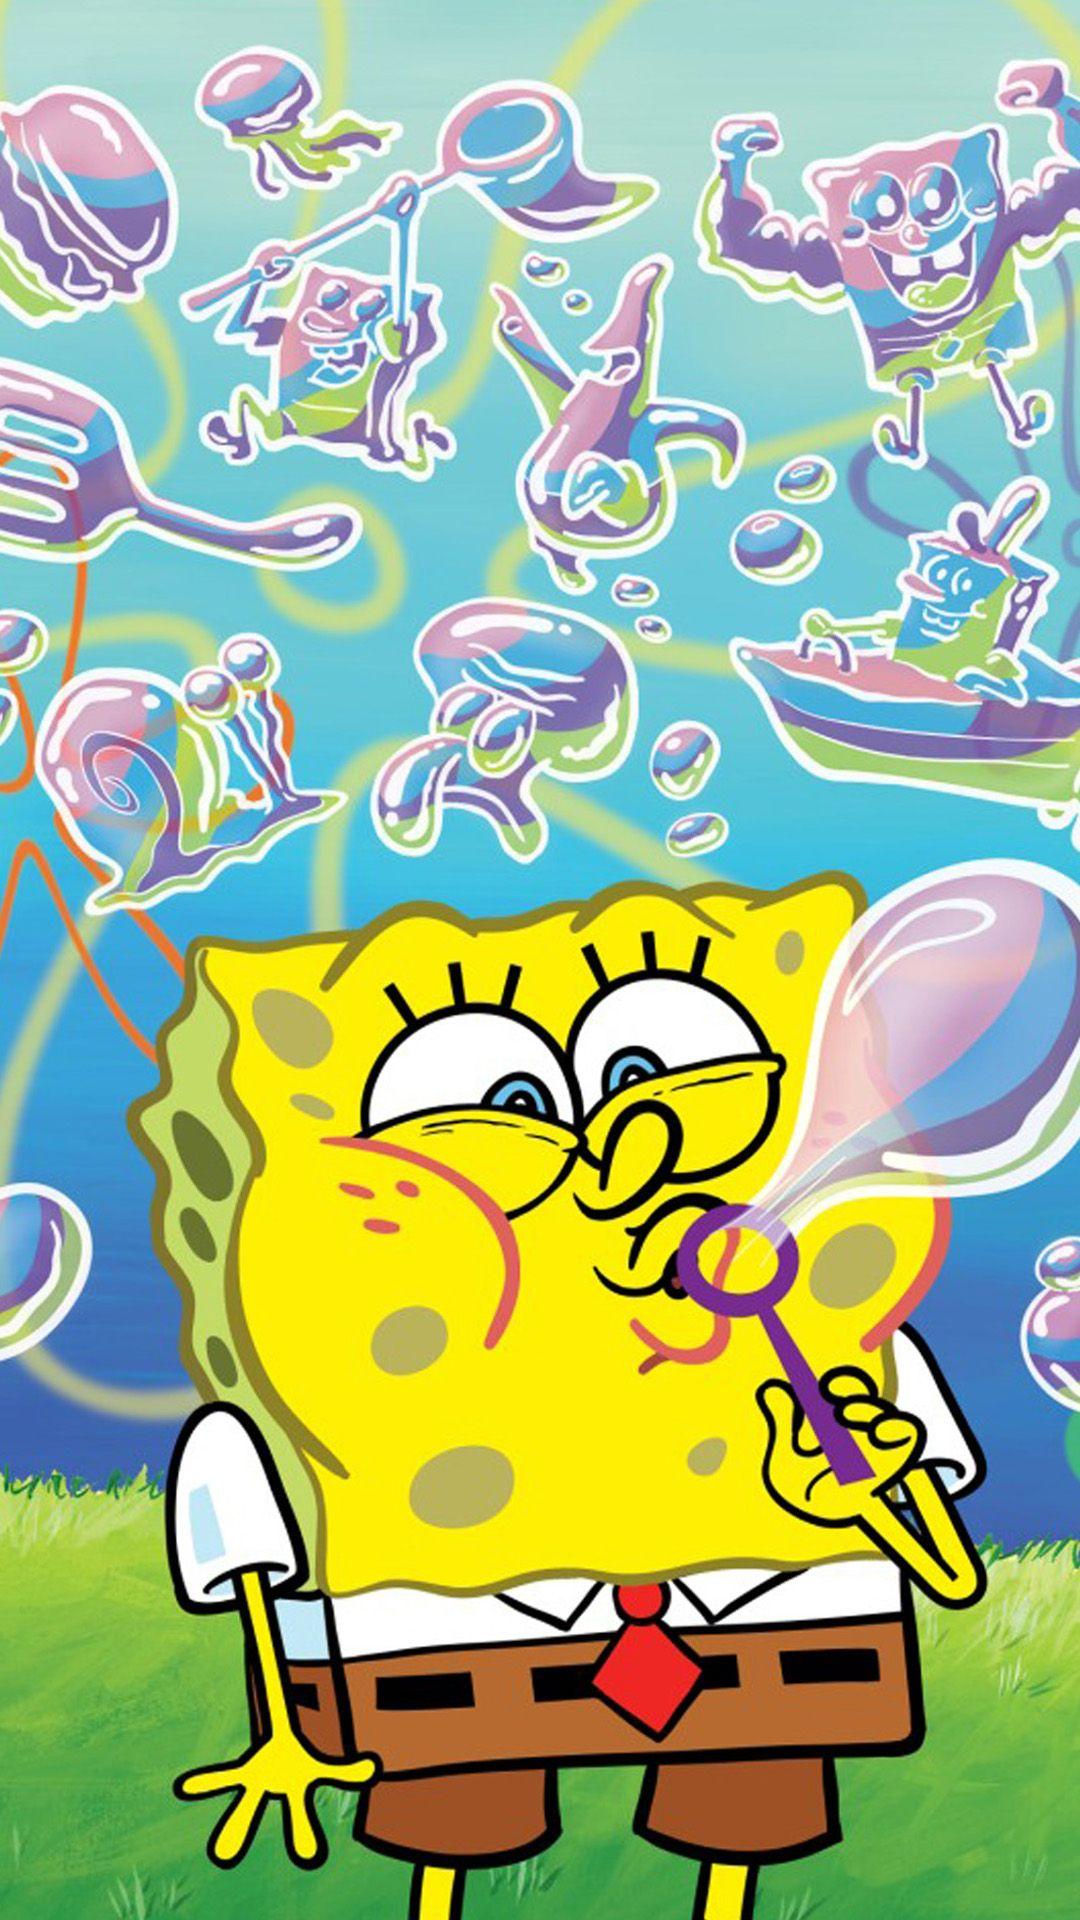 SpongeBob 3 LG G2 Wallpaper, LG G2 Wallpaper, LG Wallpaper